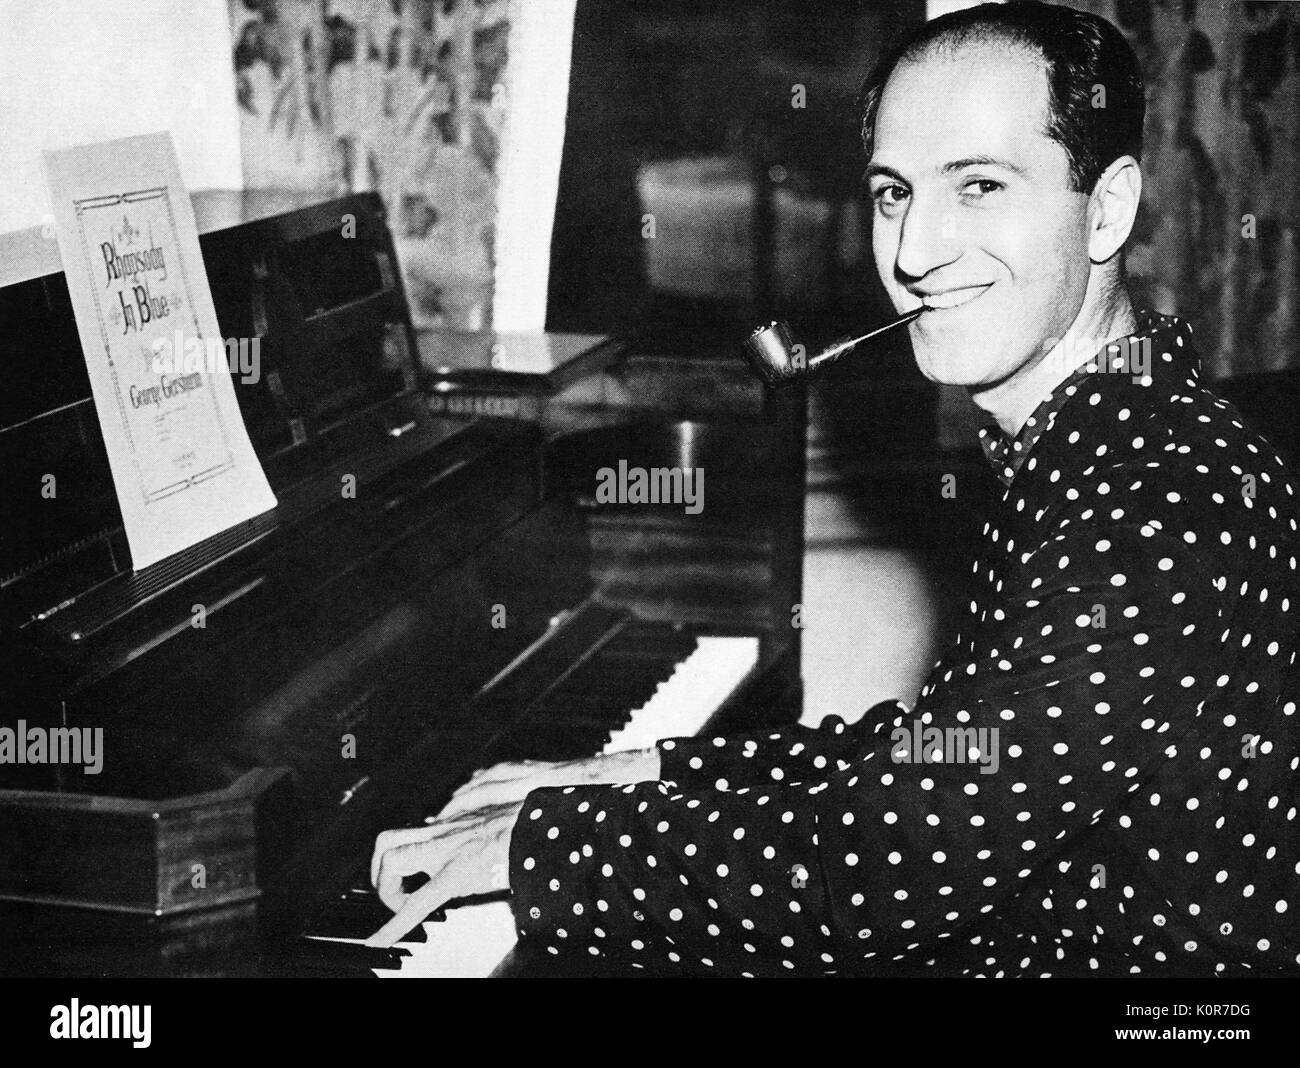 GERSHWIN, George au piano avec la Rhapsody in Blue Note sur le piano.  Janvier 1937 San Francisco pour pratiquer avec cocerts Monteux et l' Orchestre symphonique de San Francisco. Compositeur et pianiste, 26